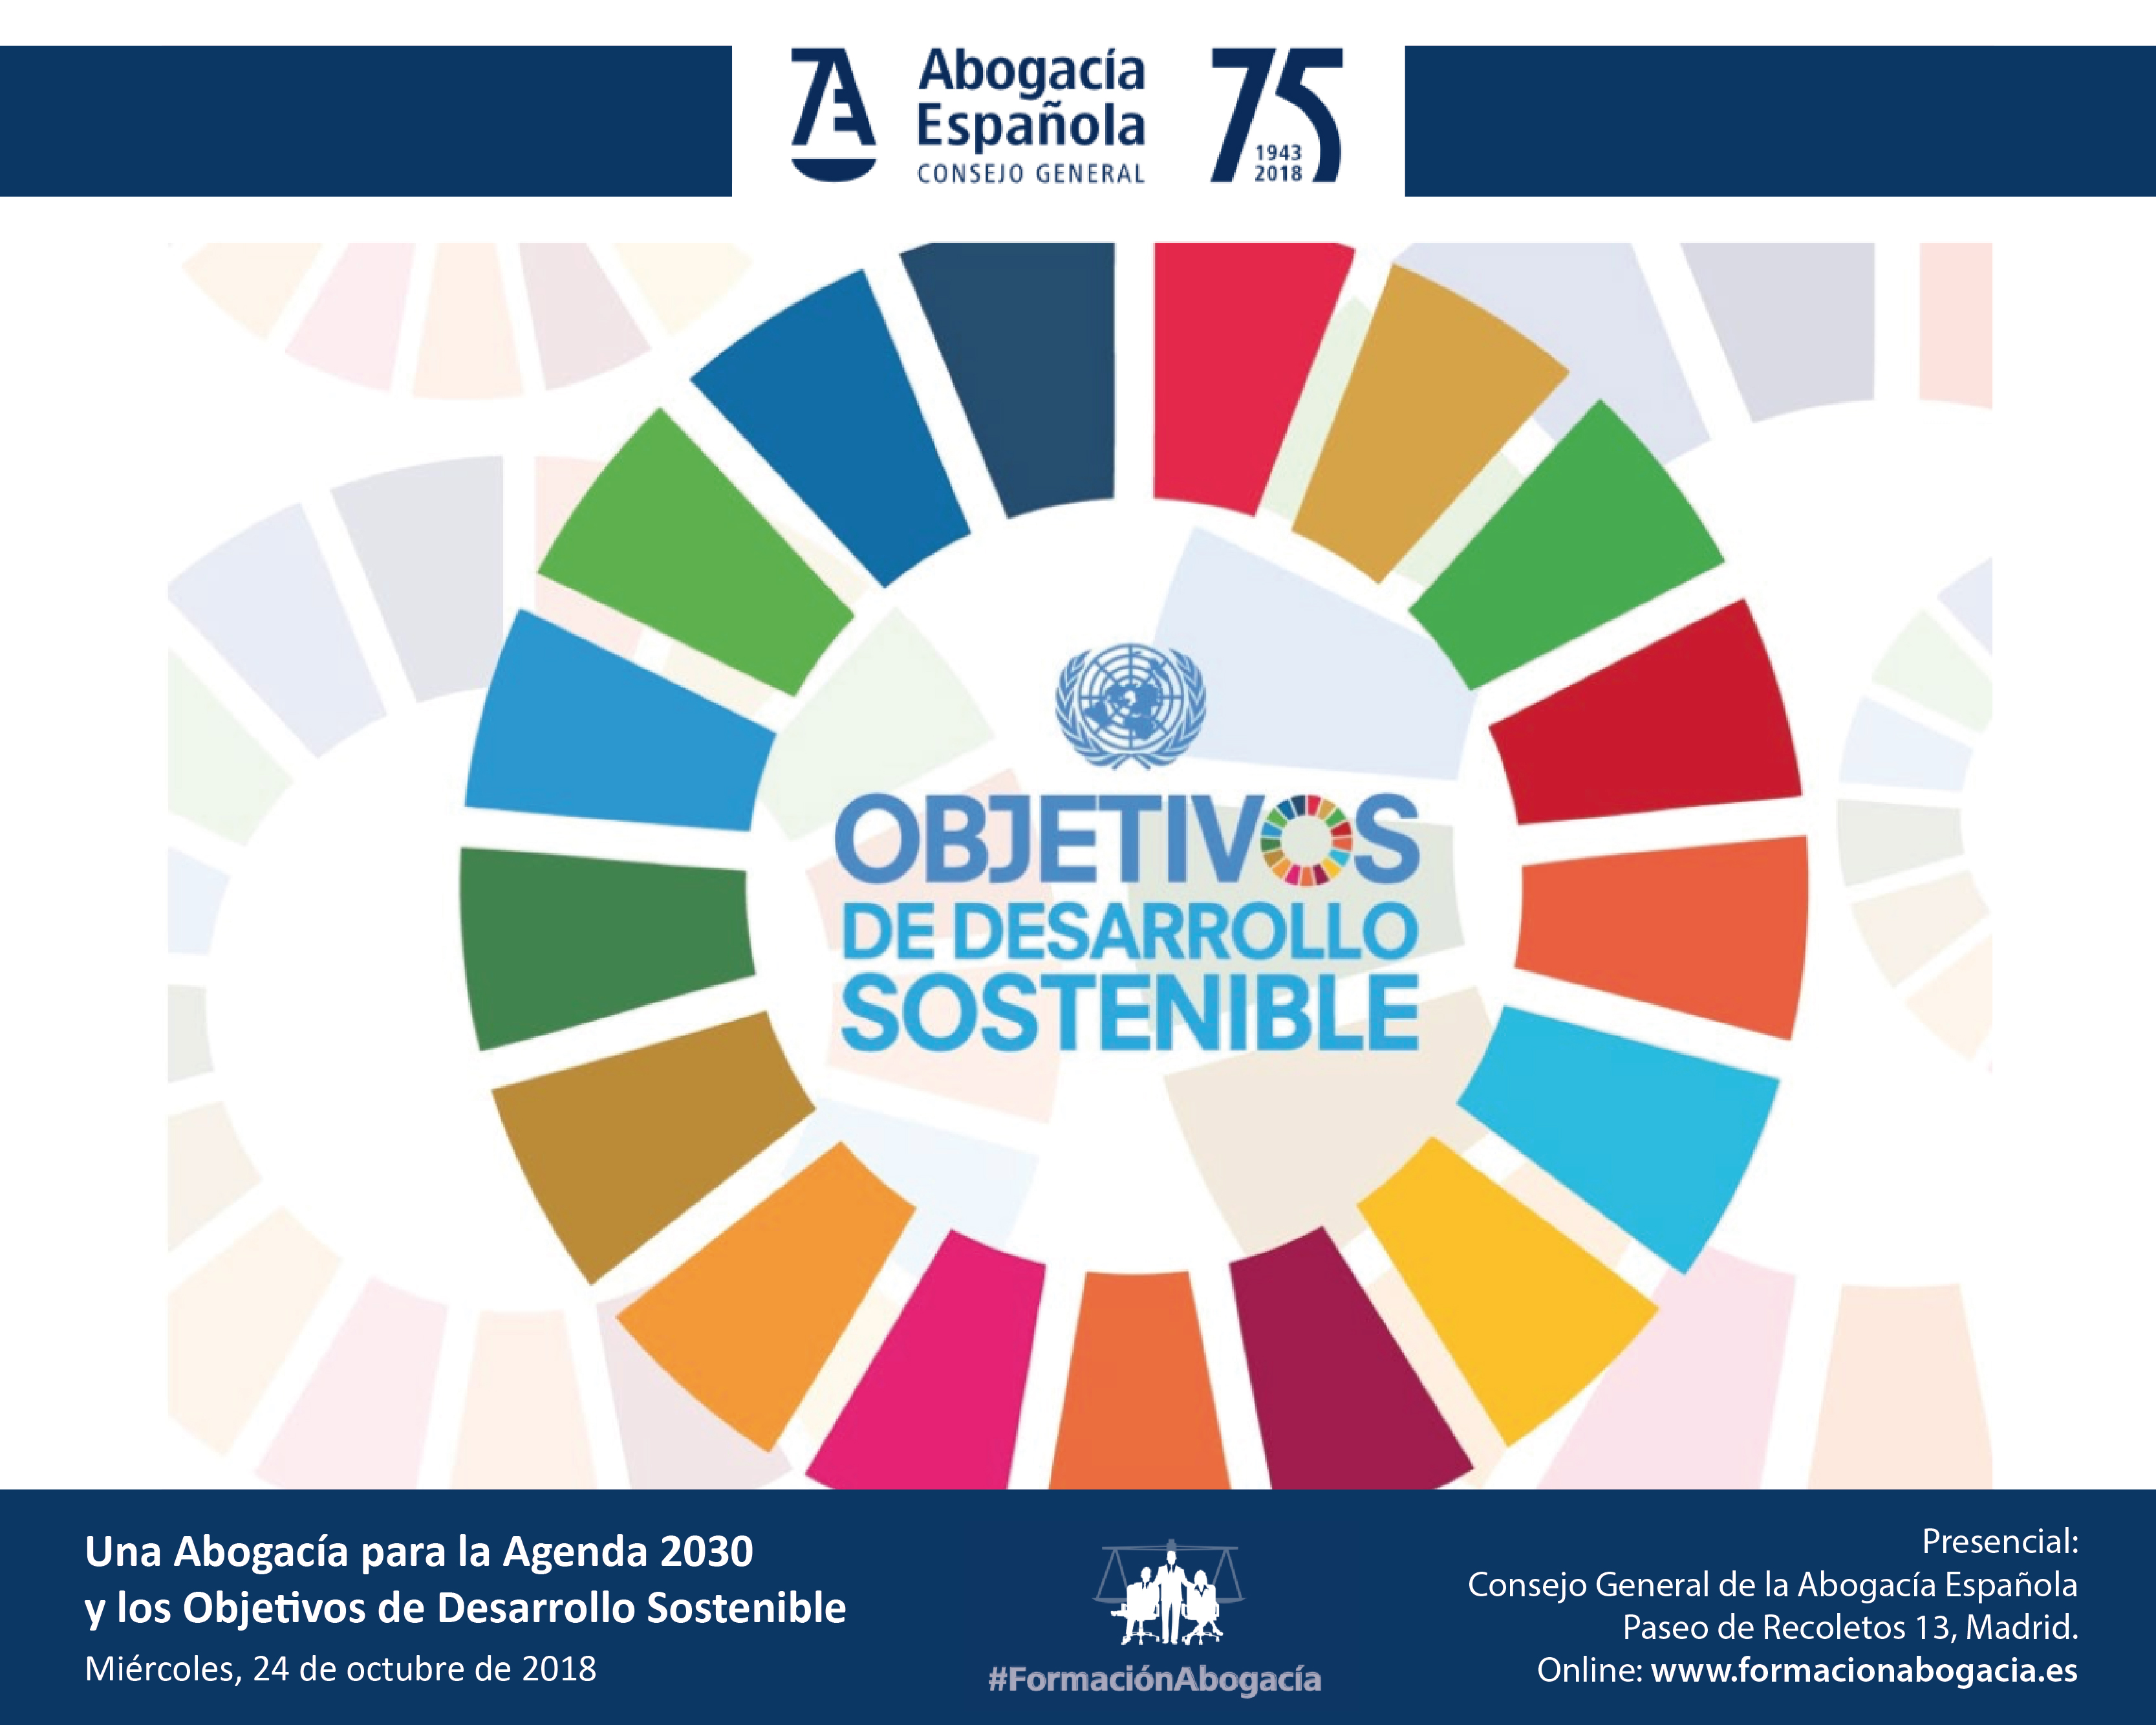 Jornada sobre l'Advocacia, l'Agenda 2030 i els Objectius de Desenvolupament Sostenible